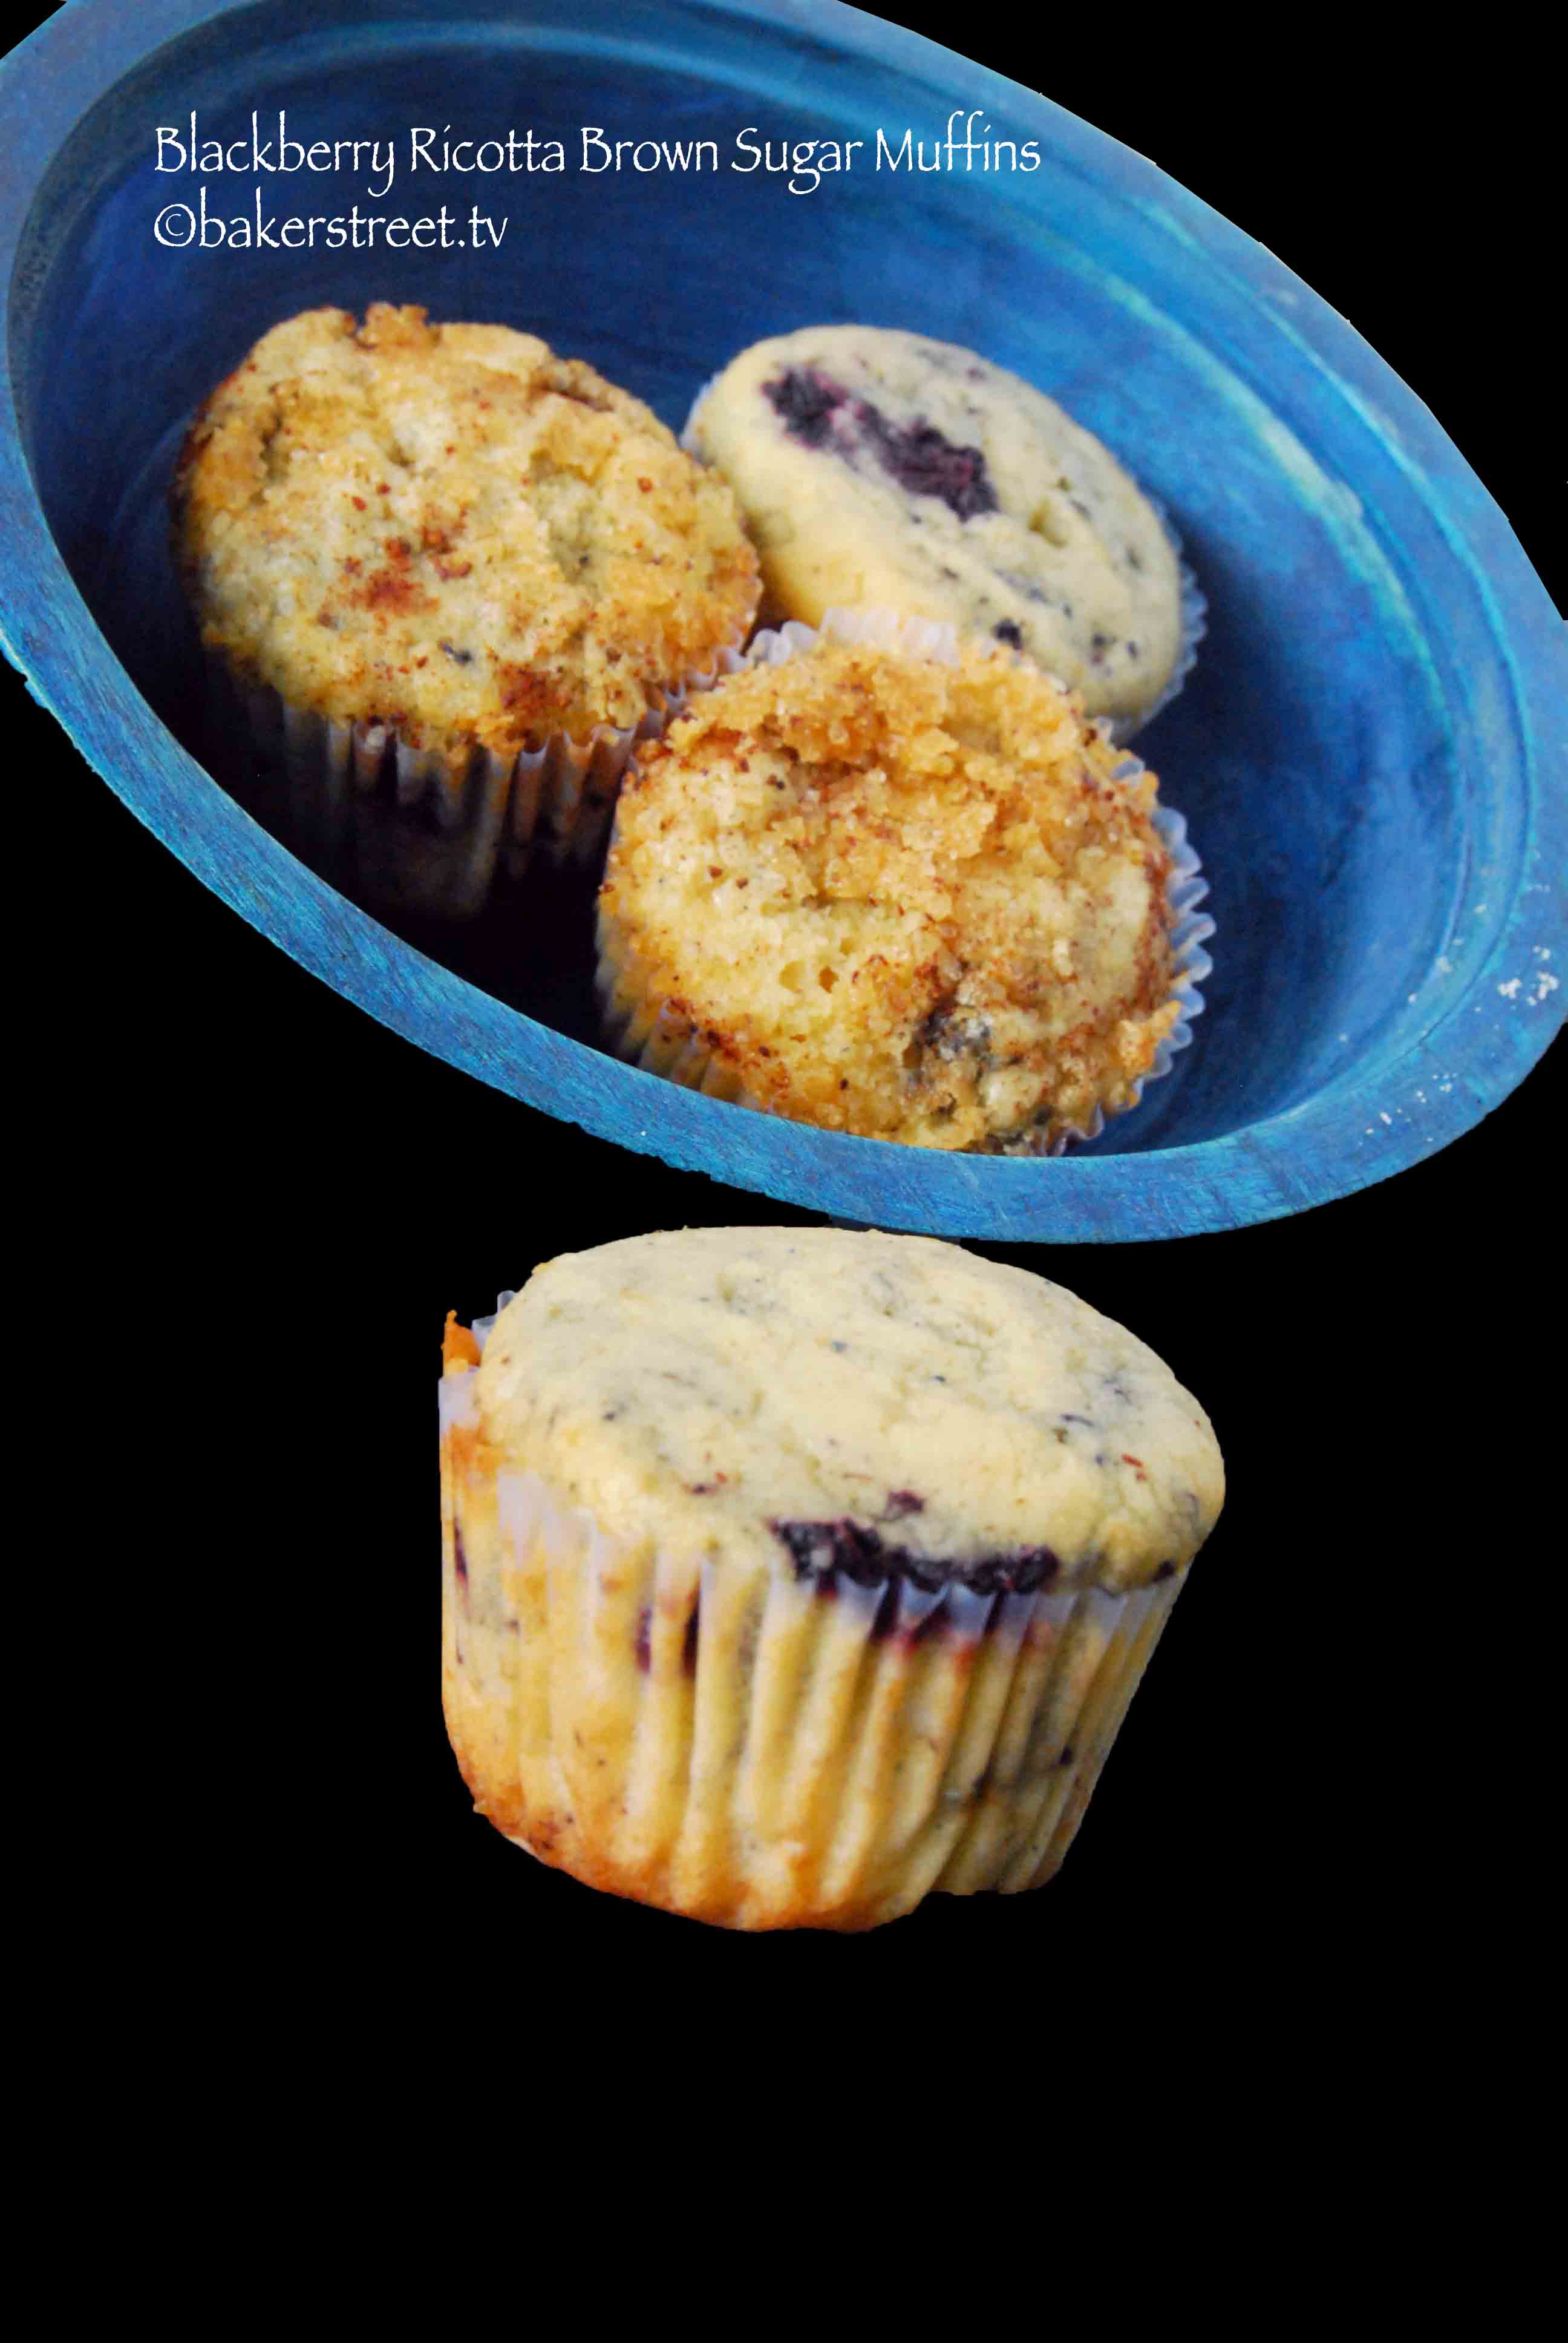 Blackberry Ricotta Brown Sugar Muffins | Aug 13, 2012